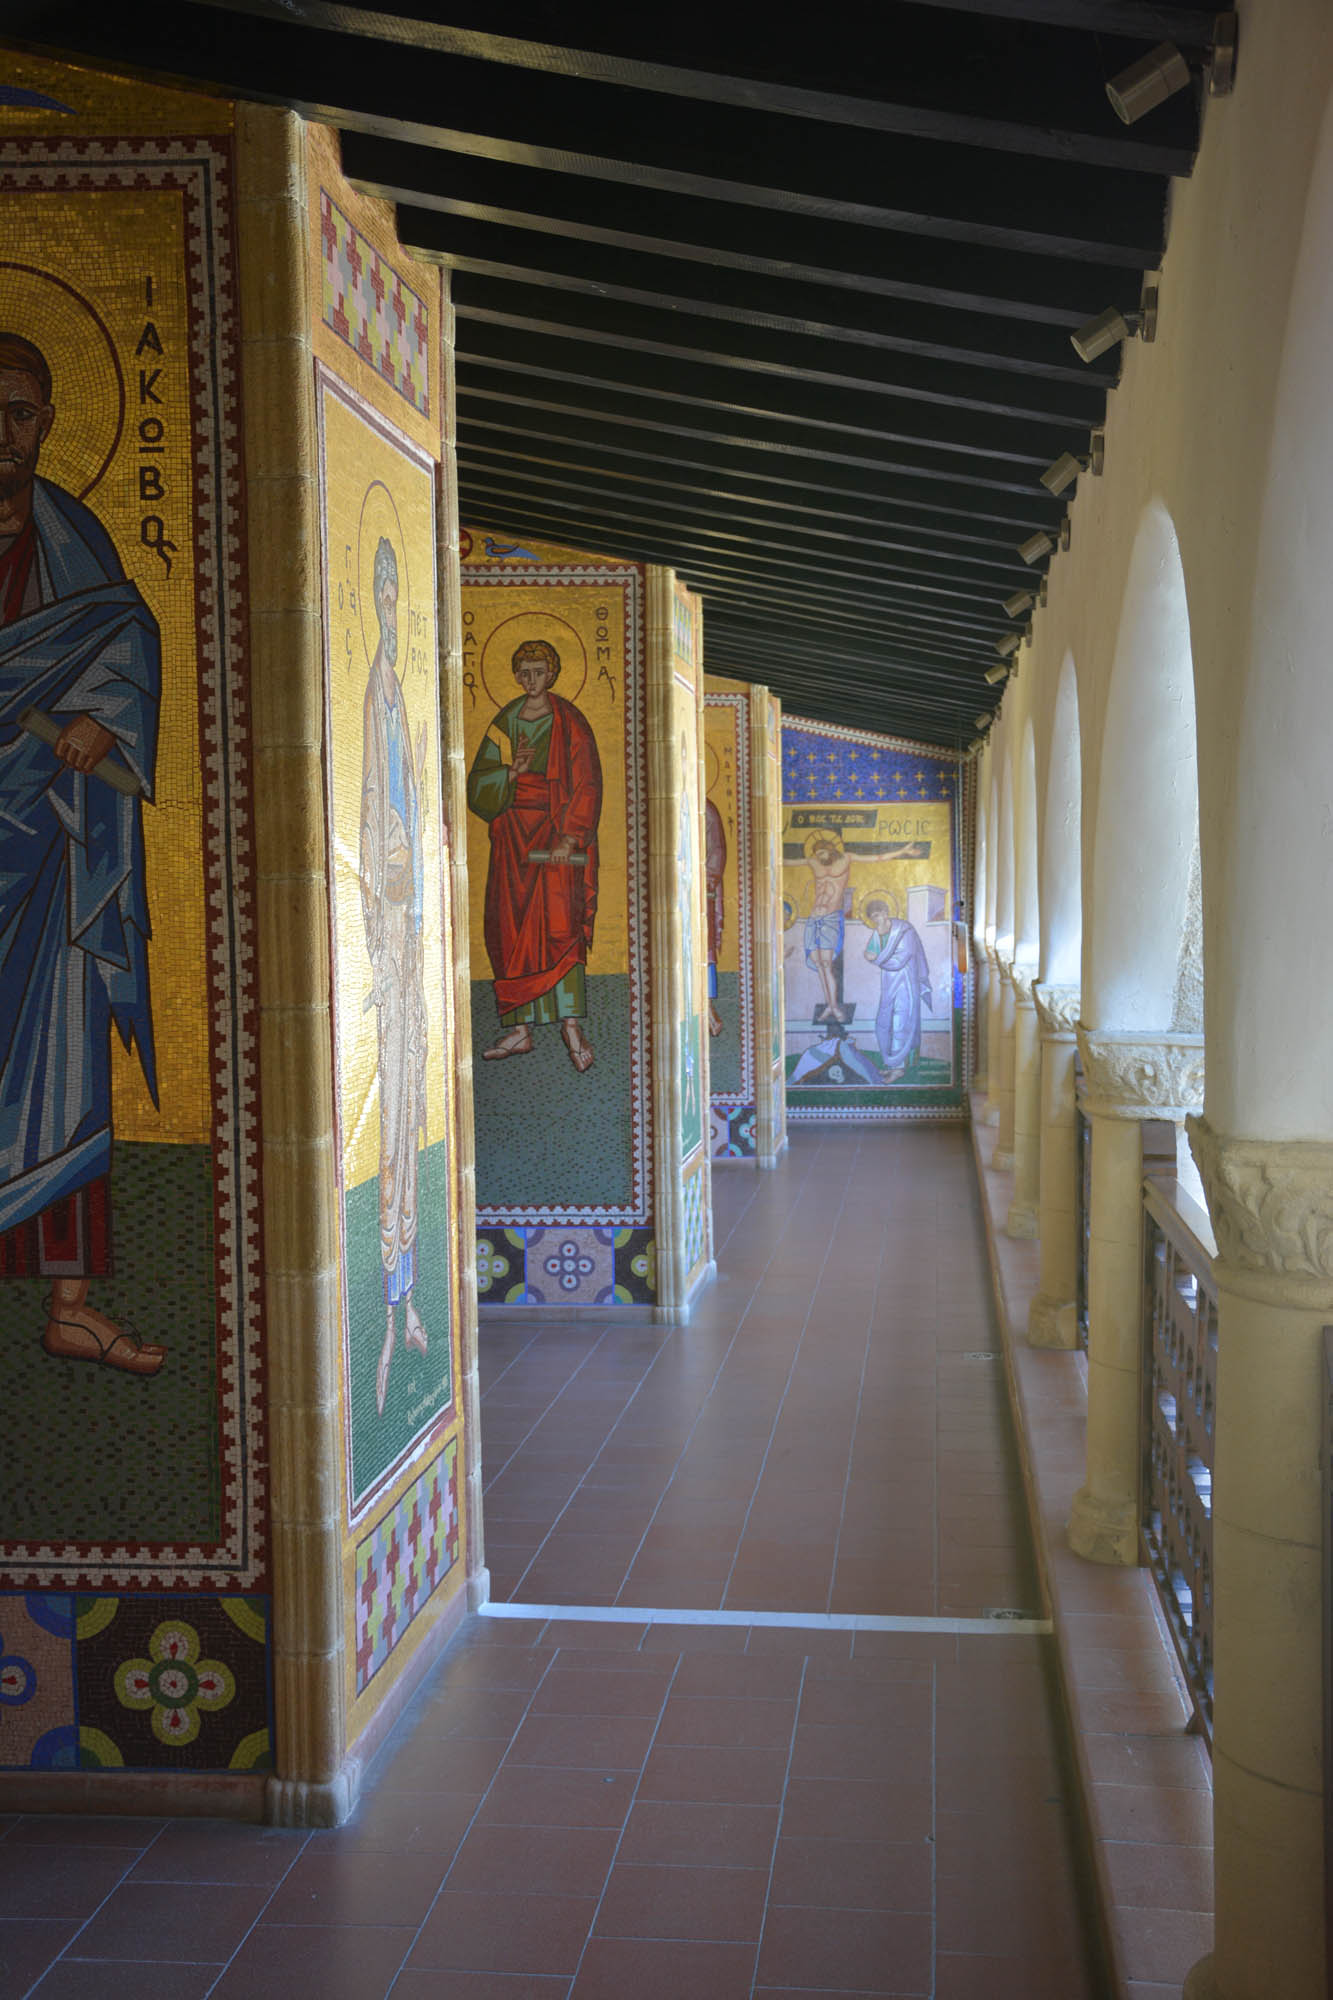 klasztor kykkos, wnętrze, ściany z freskami, kolorowe malowidła, detale w korytarzu, przejście z podcieniami